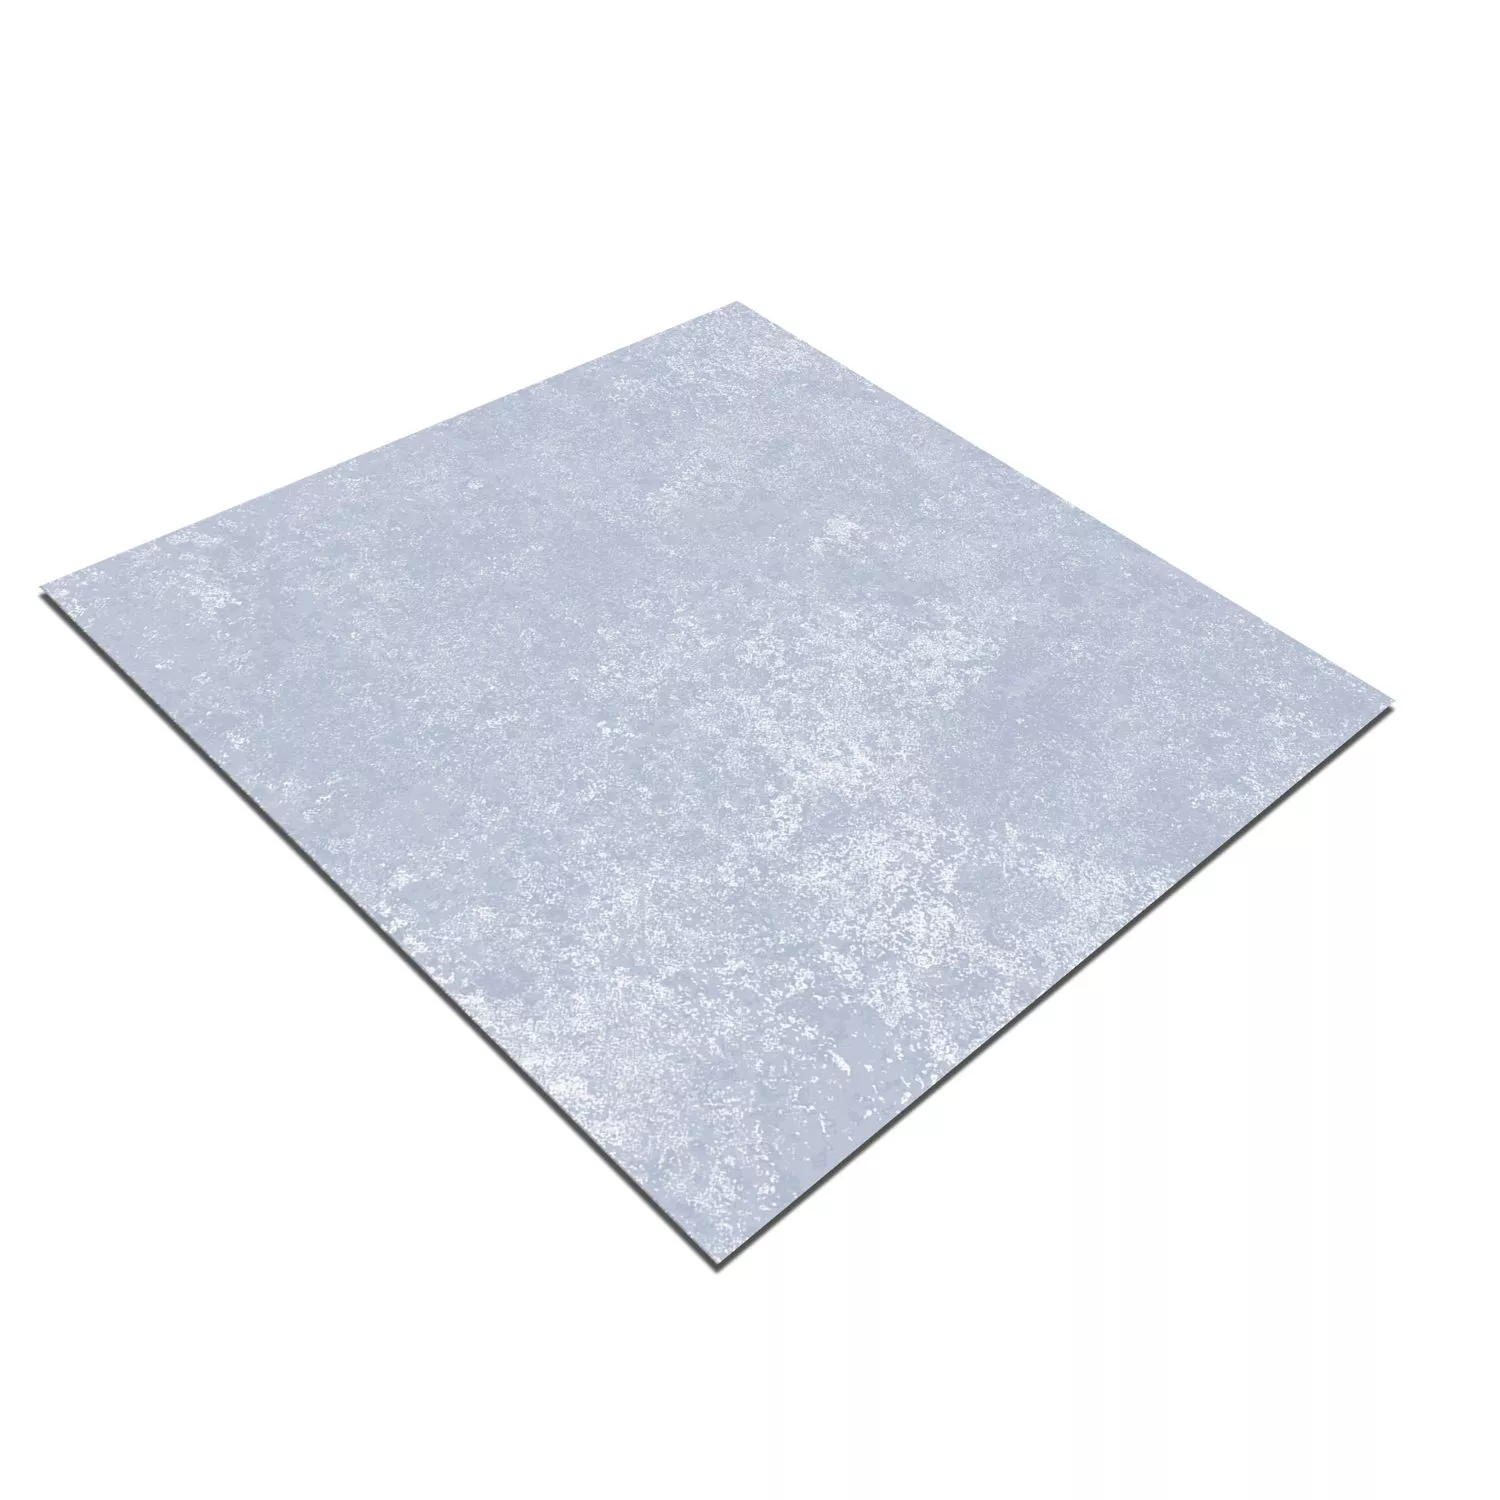 Prøve Cementfliser Retro Optik Toulon Frundlæggendeflise Blå 18,6x18,6cm